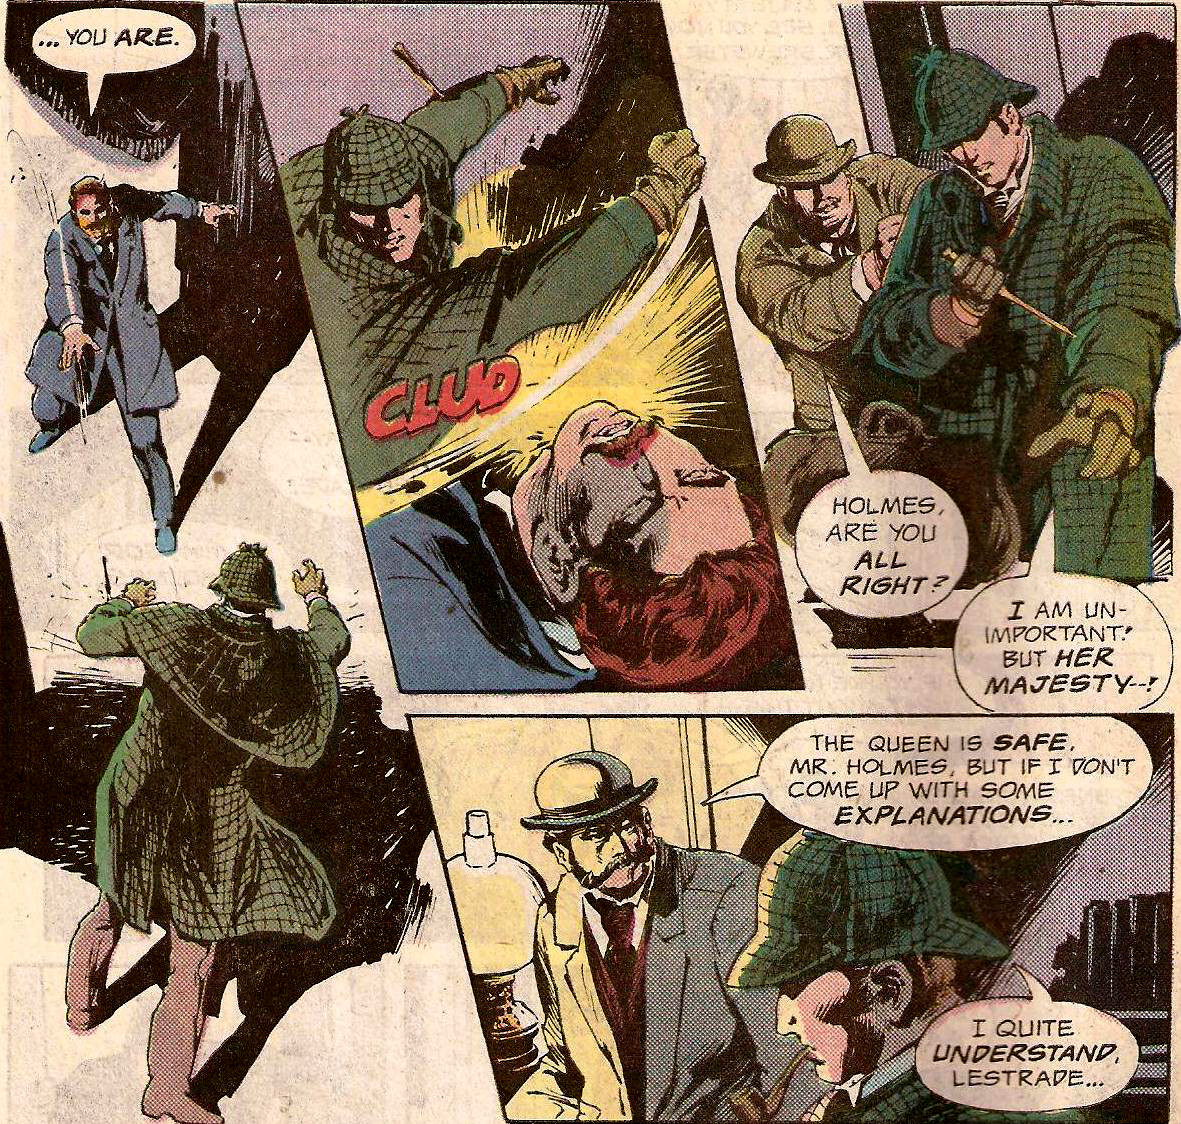 From Detective Comics (Vol. 1) #572 (1987)